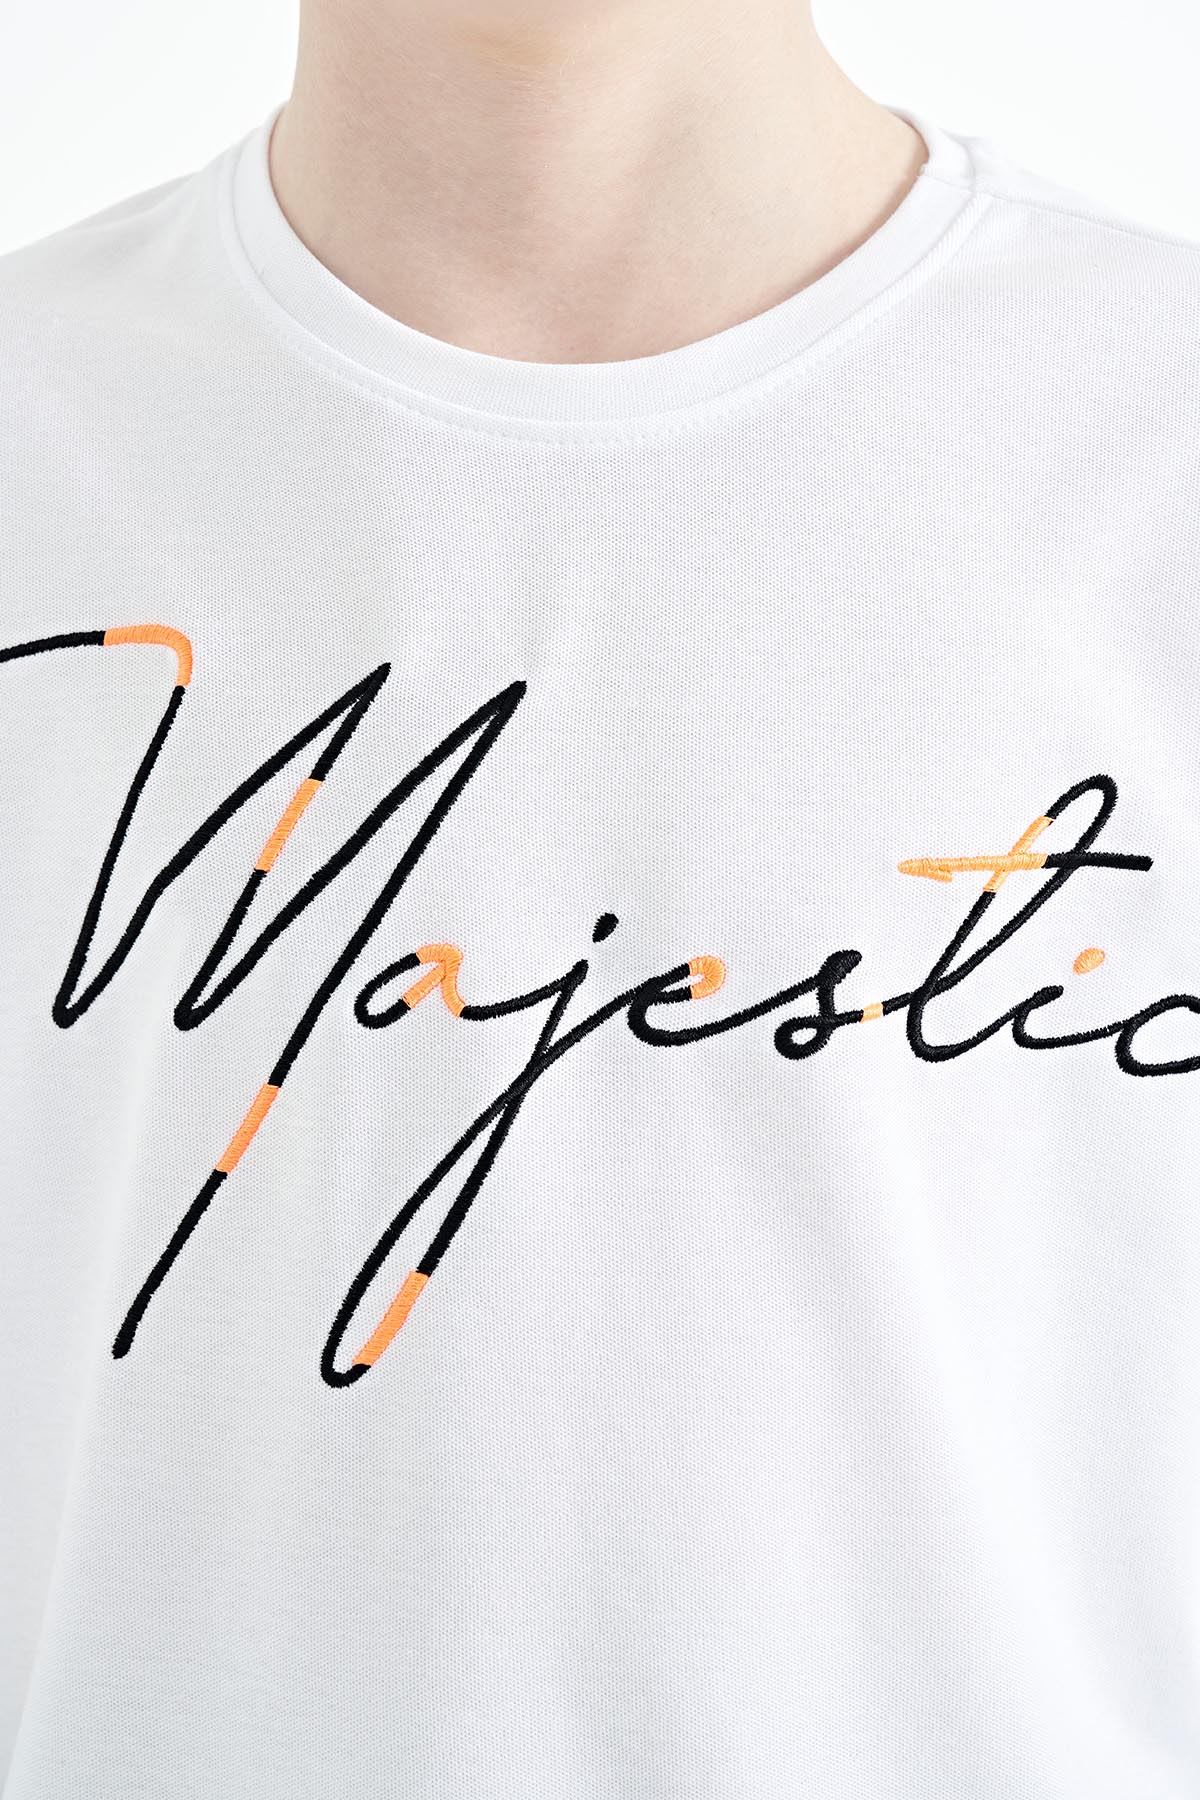 Louis Vuitton T-shirt Signature Beyaz Erkek